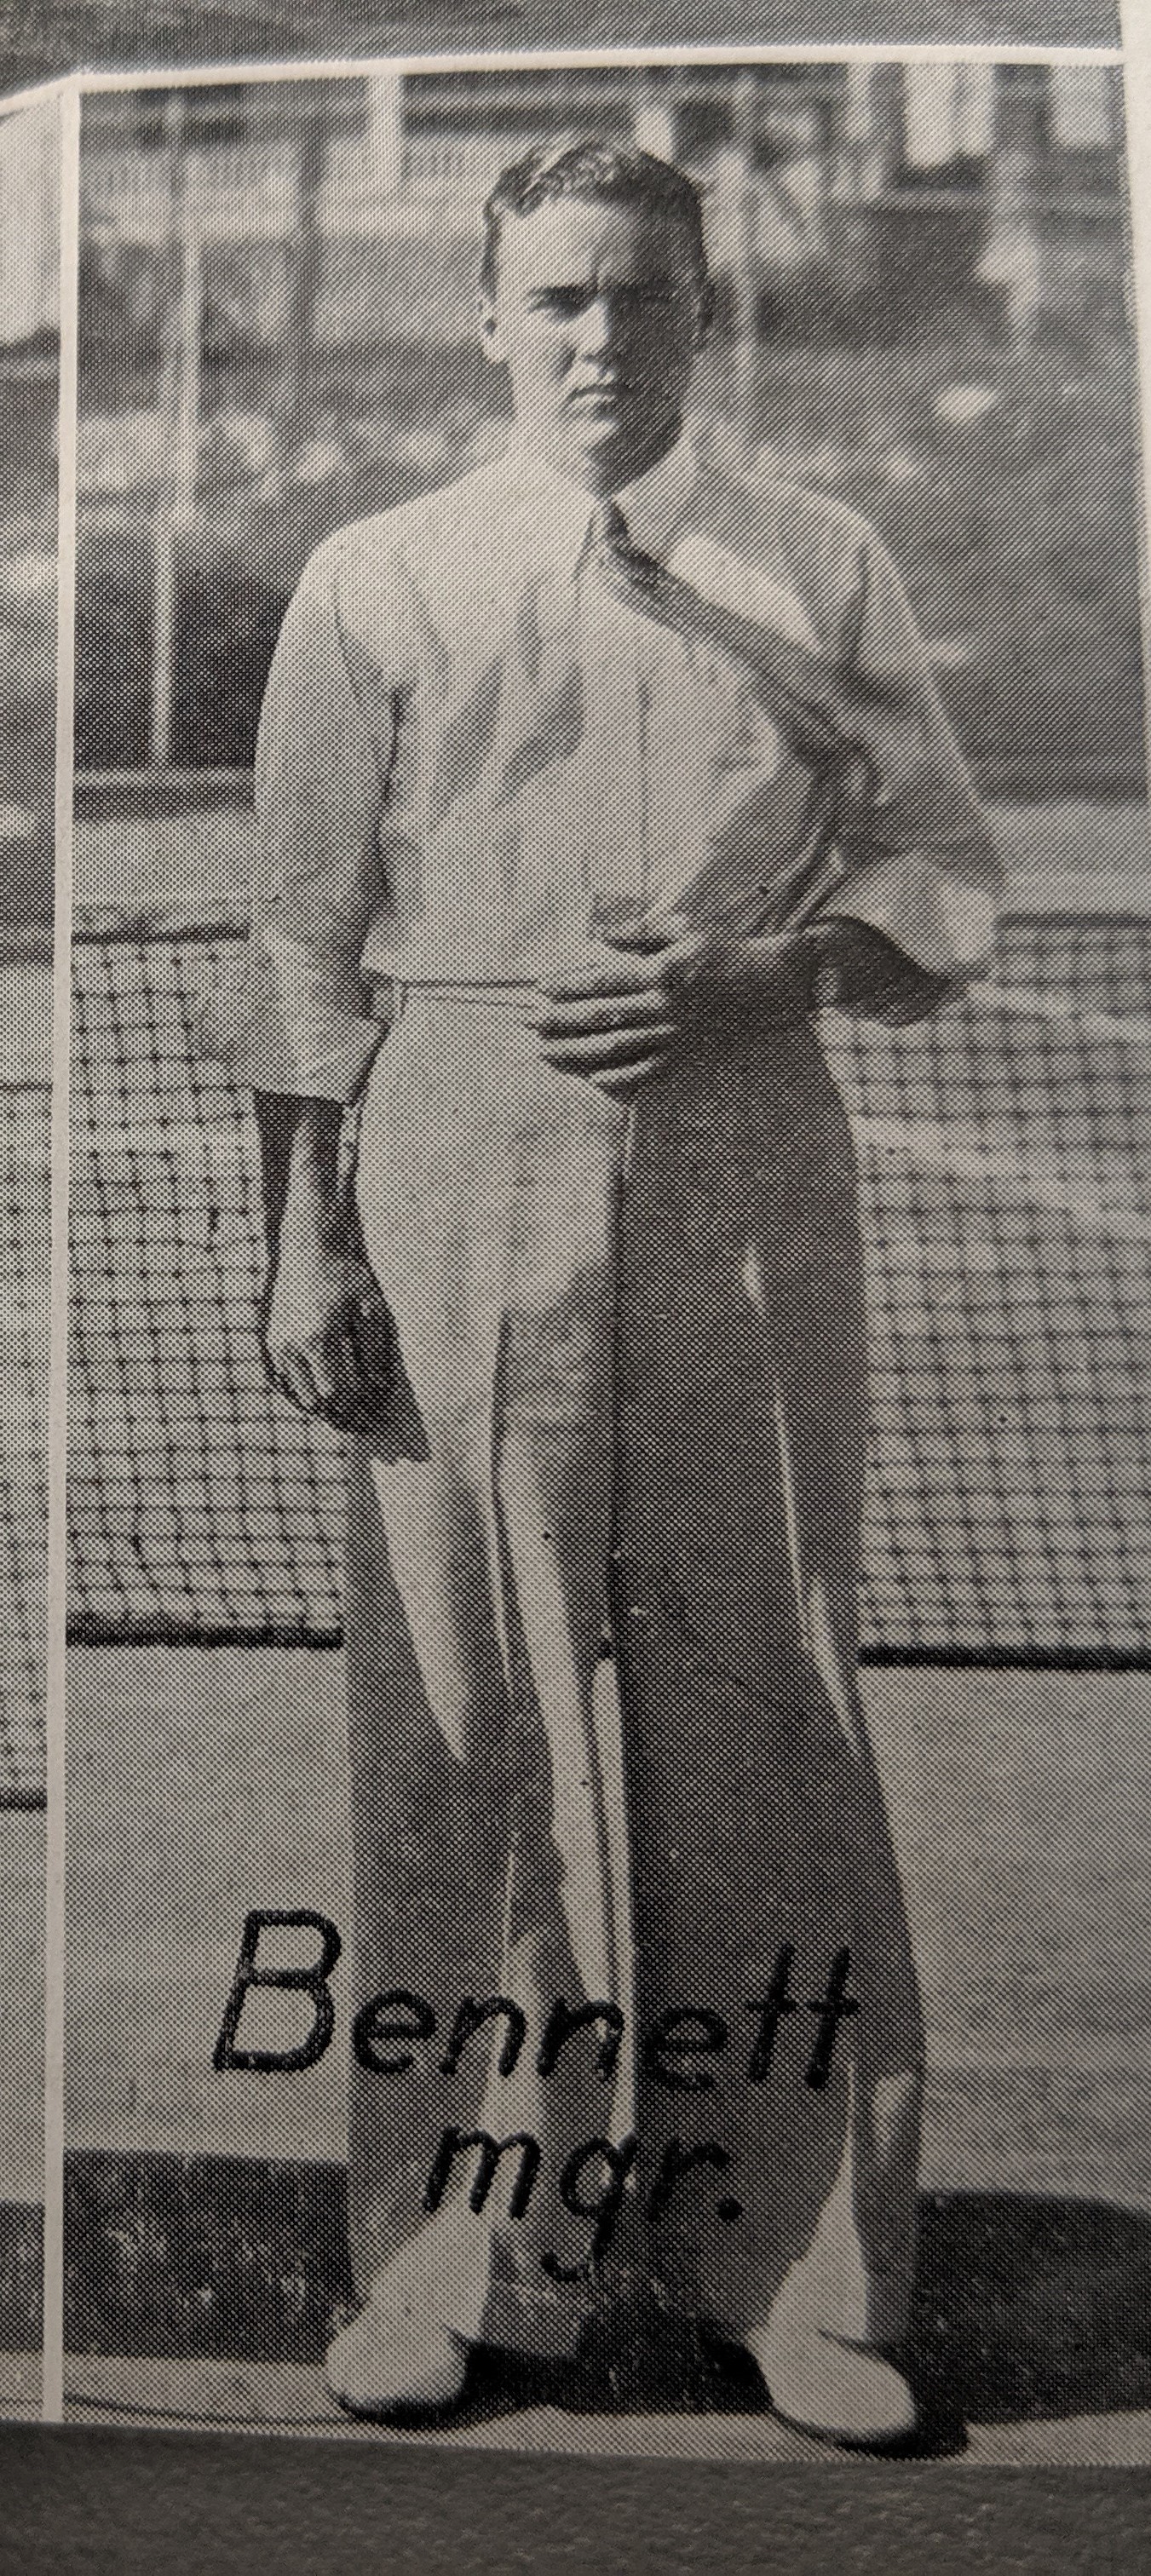 Bennett - manager Tennis